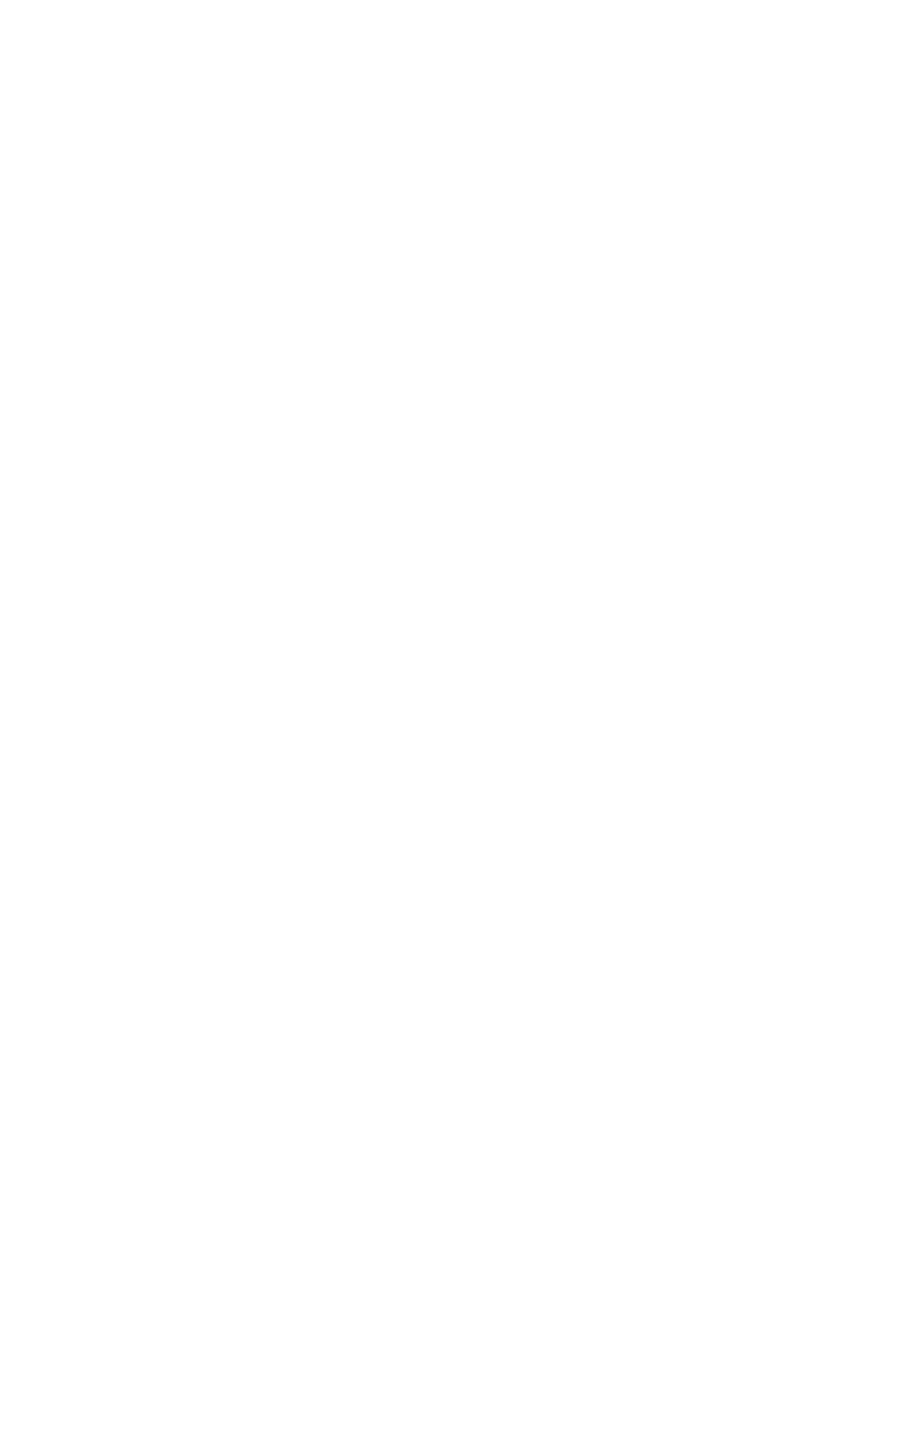 Bake Stone Deli logo